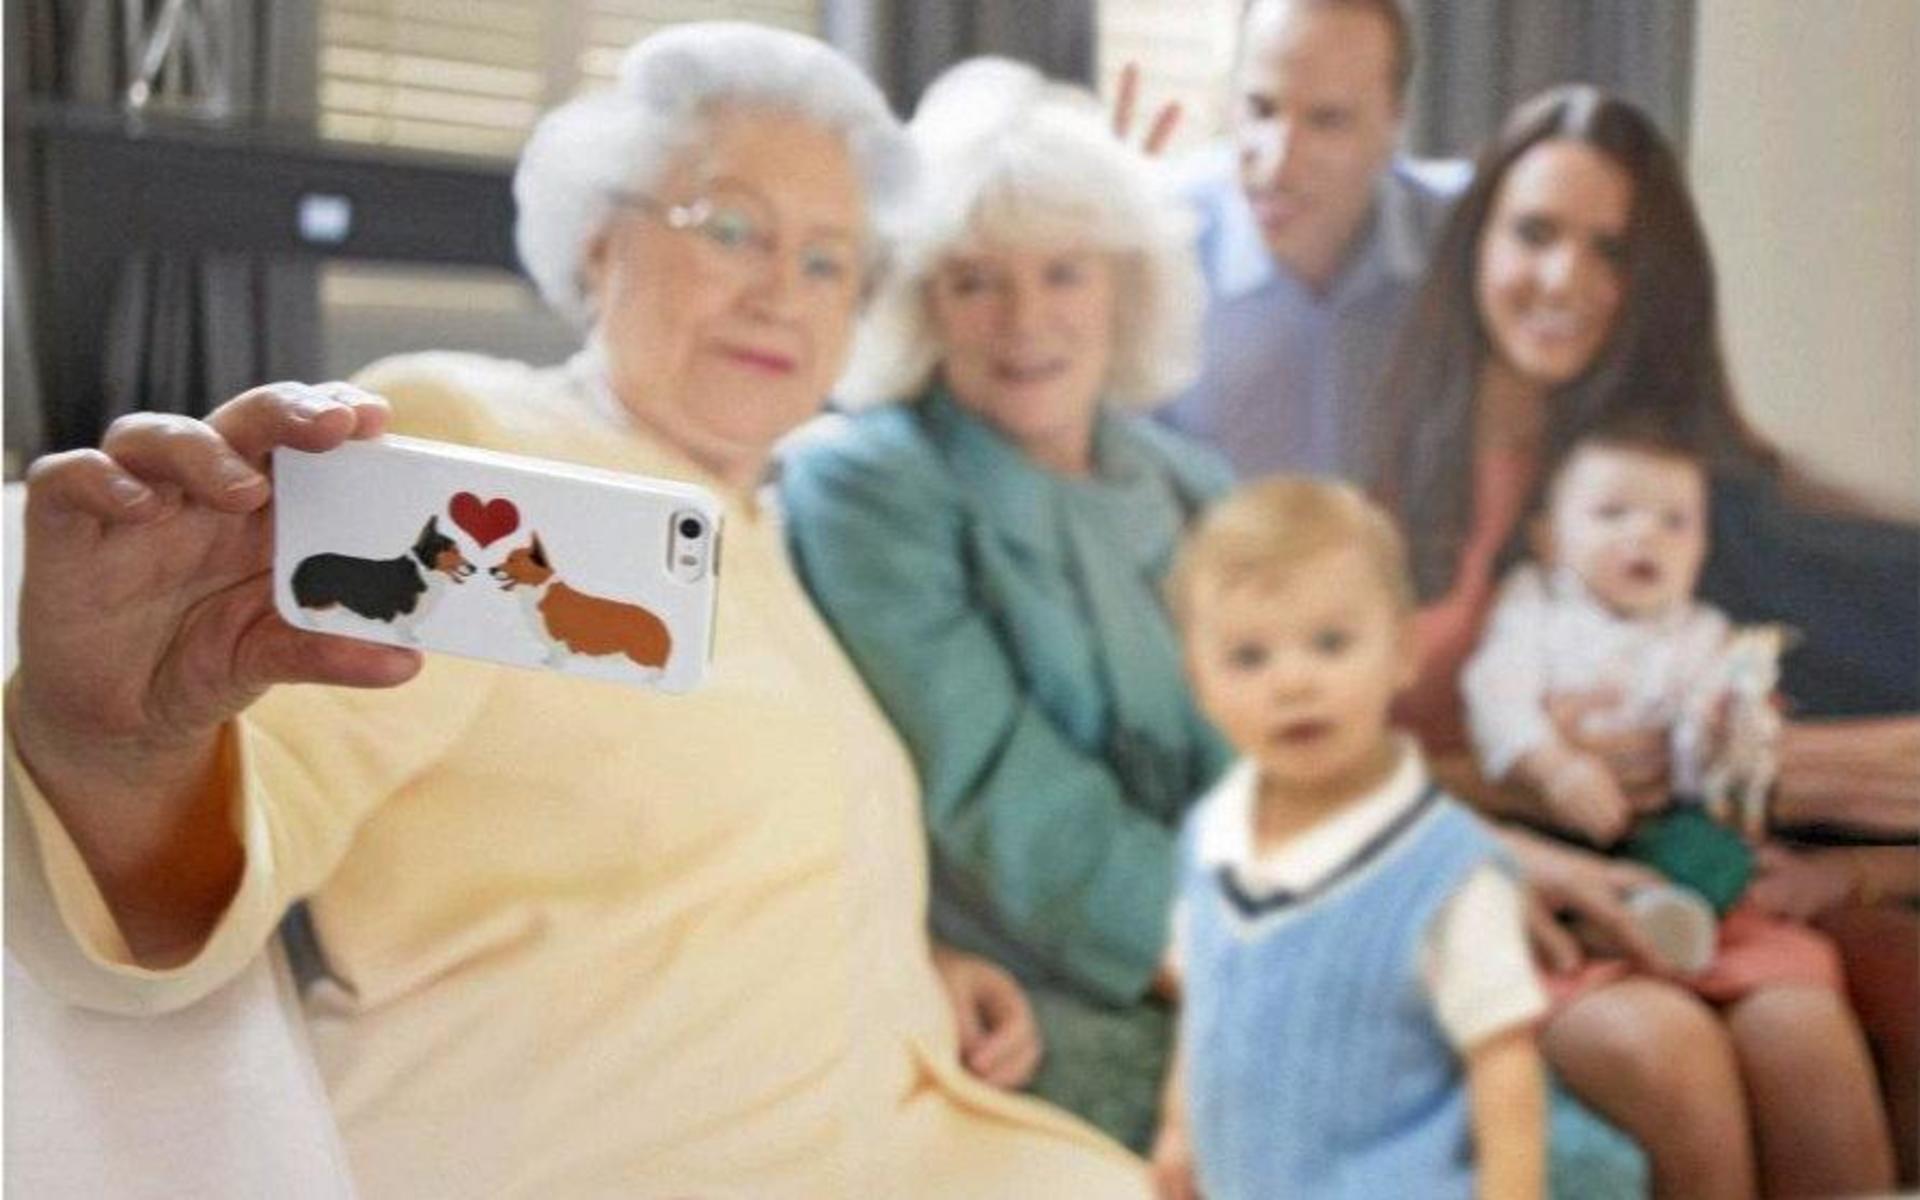 Queen Elizabeth tar en selfie med familjen.